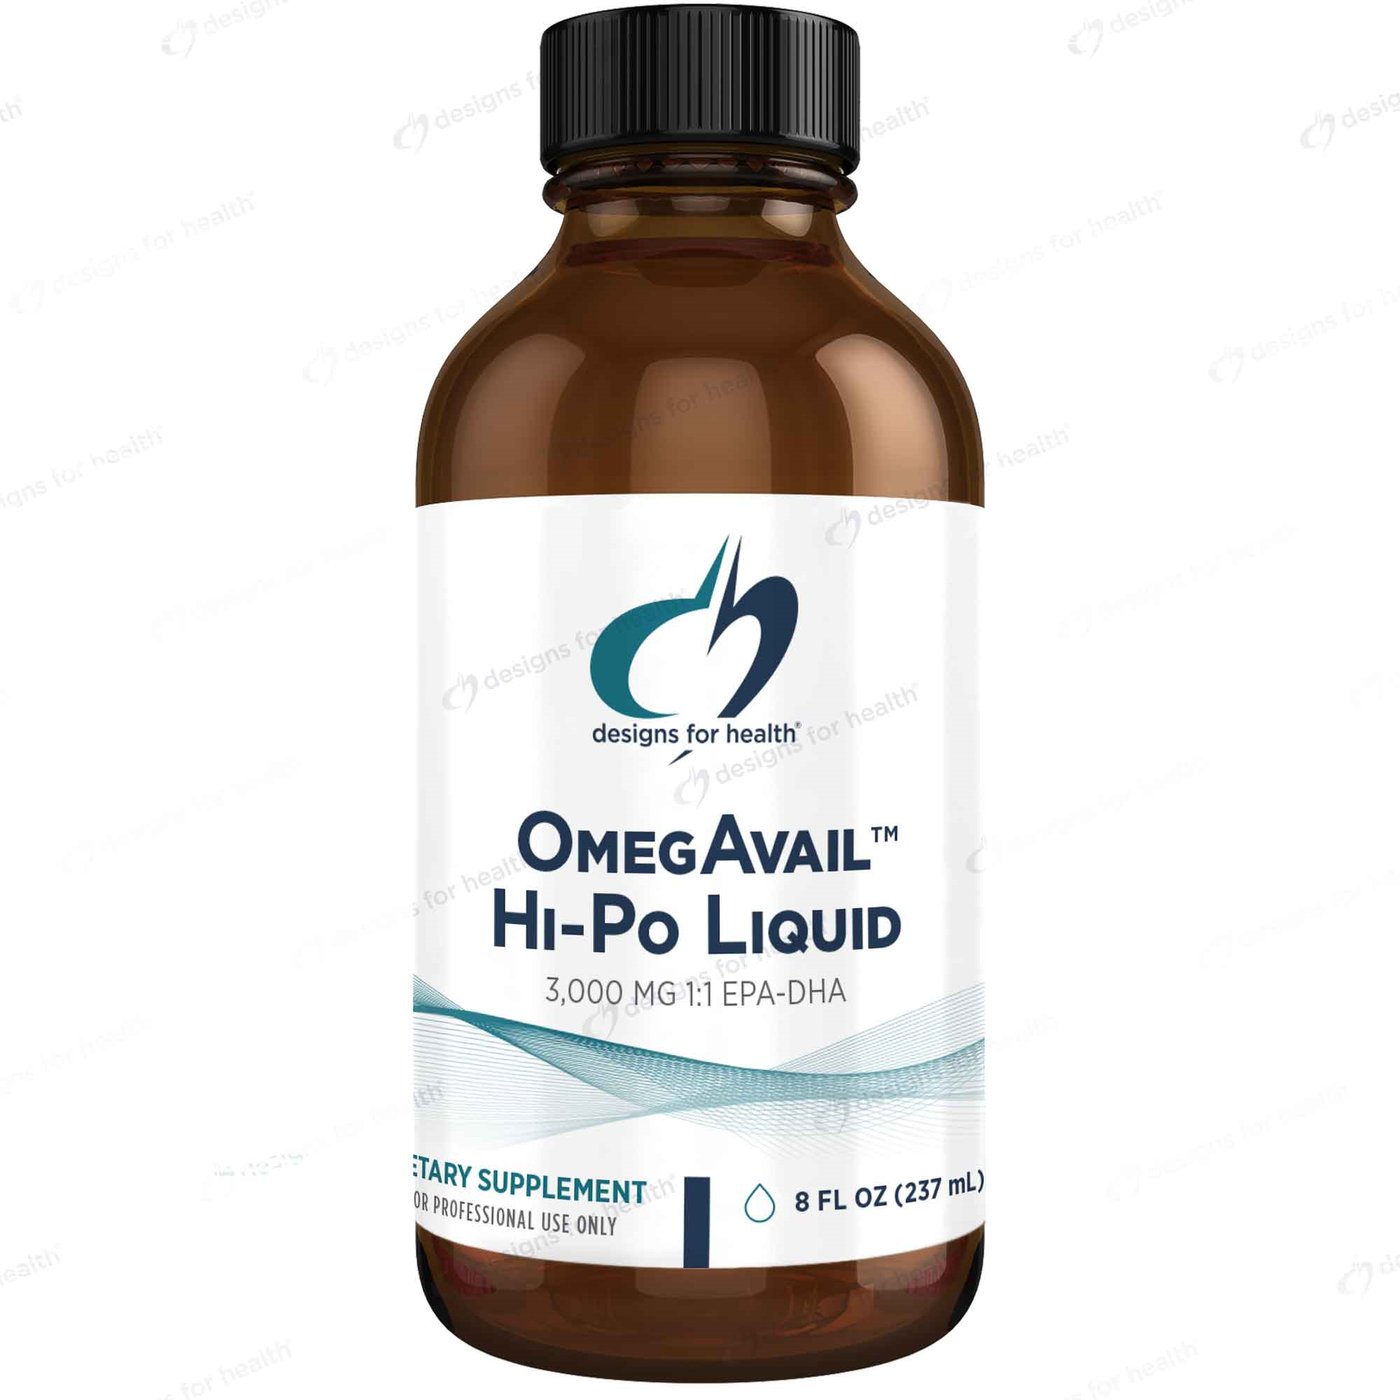 OmegAvail Hi-Po Liquid 8 fl oz Curated Wellness